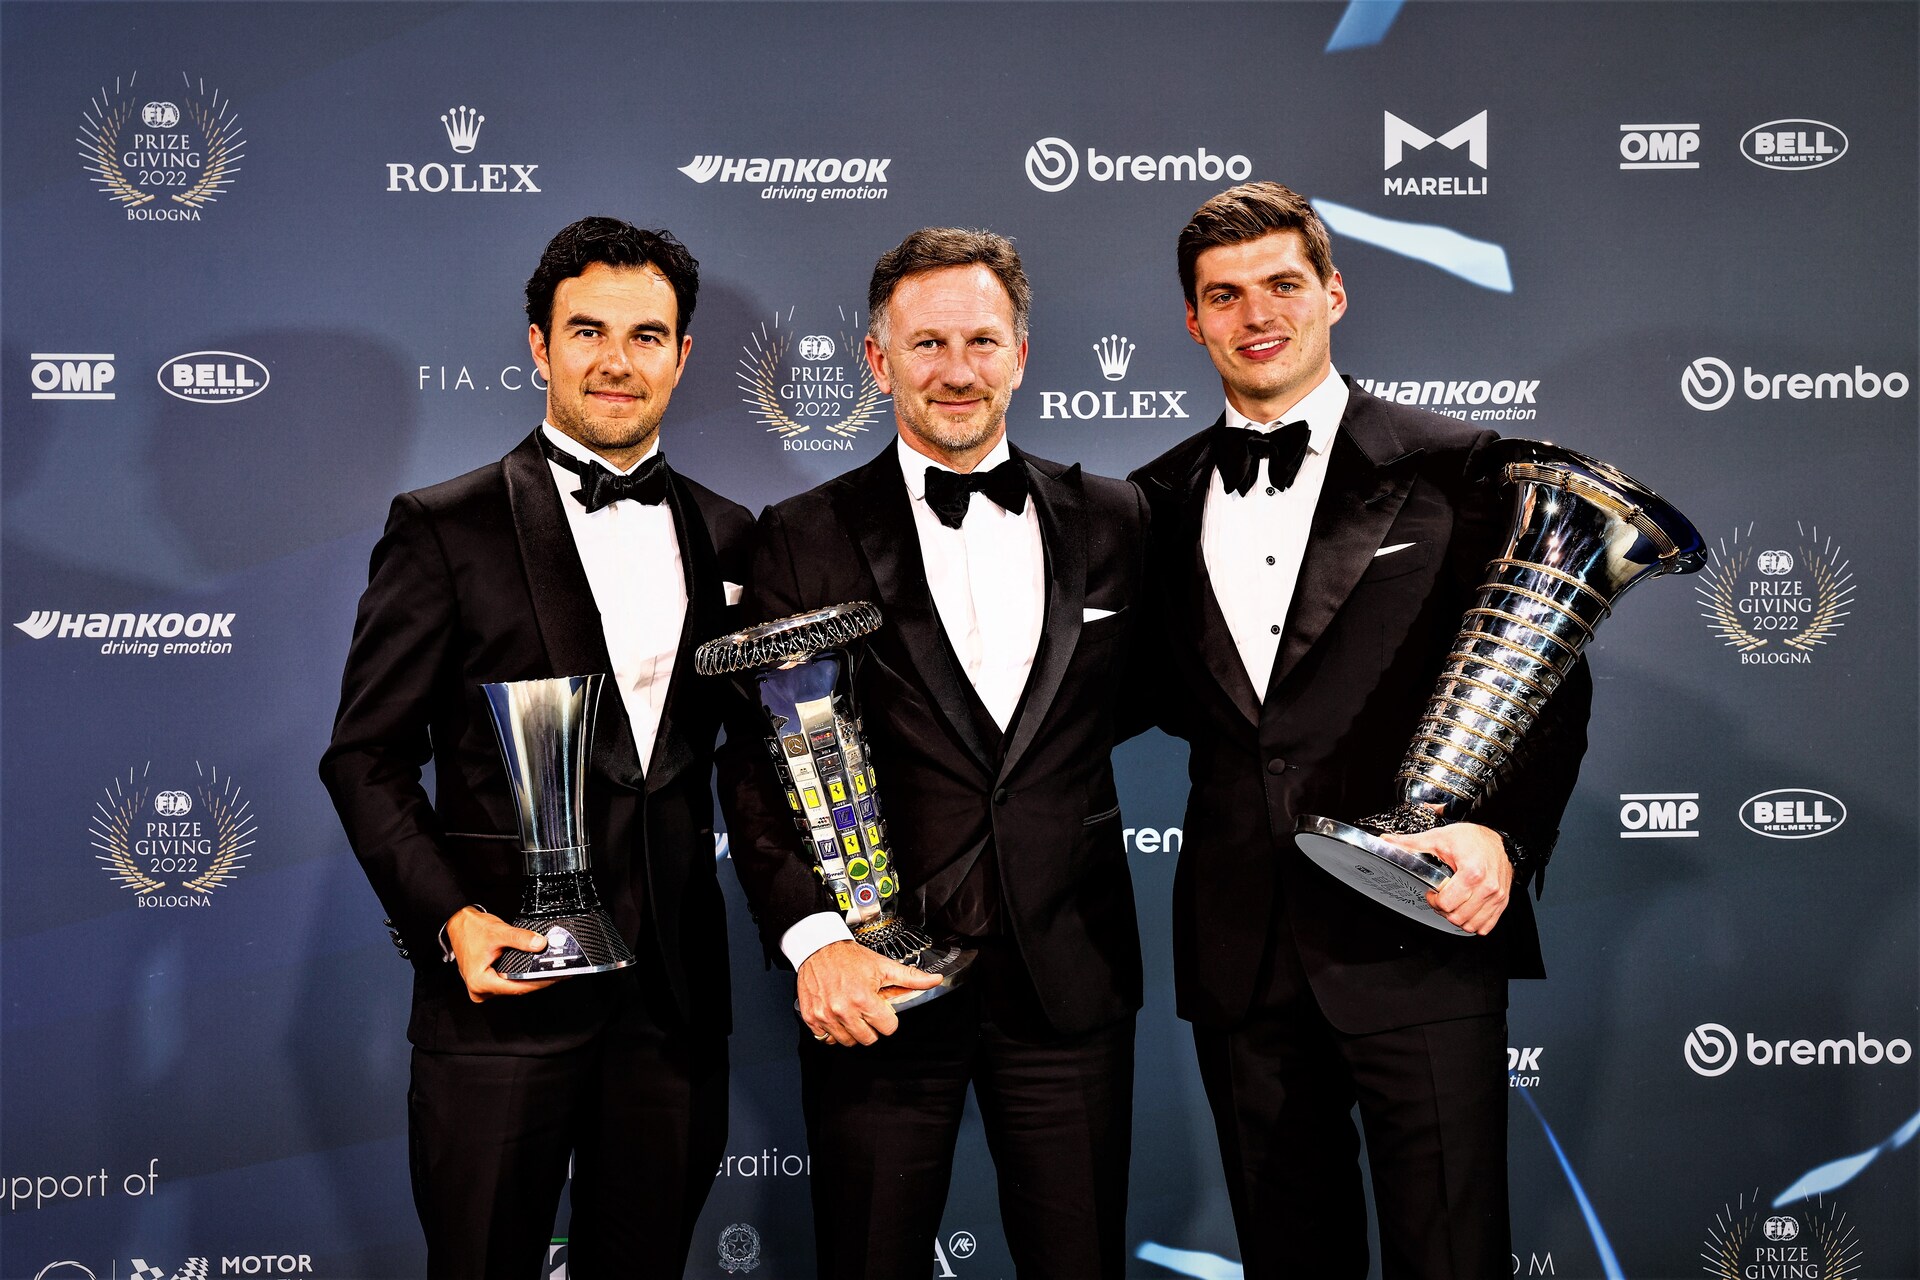 Innovazione nel motorsport: la Cerimonia di Premiazione FIA 2022 a Bologna Christian Horner, Team Principal Red Bull Racing in Formula 1, fra i piloti Sergio Pérez e Max Verstappen (Foto: FIA Media)